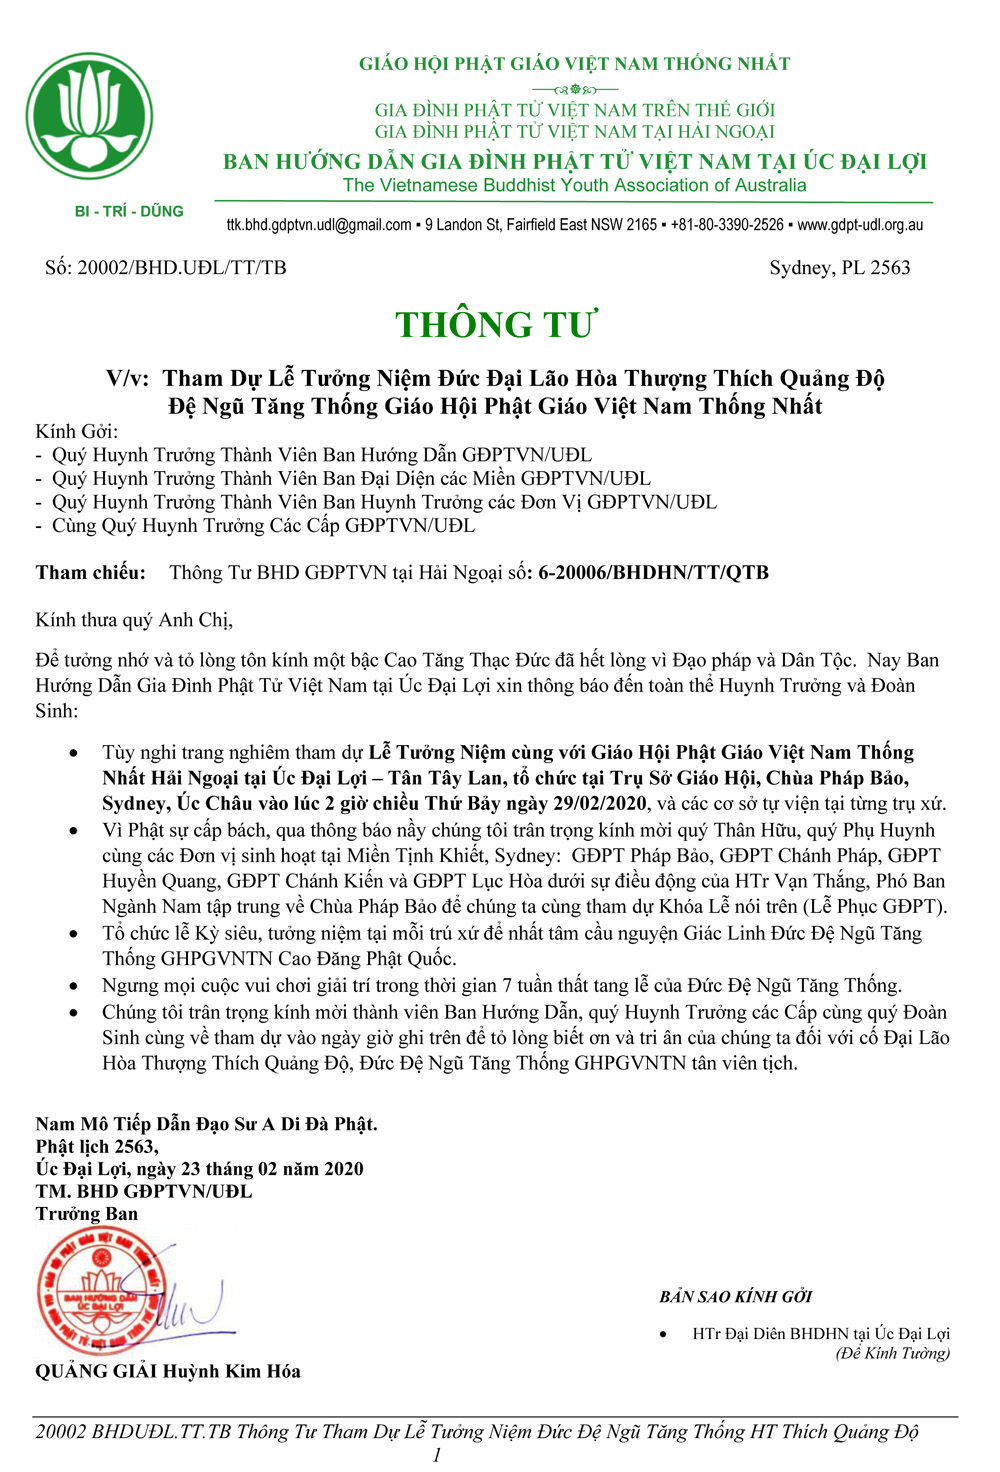 Thong tu-tuong niem-ht quang do (3)